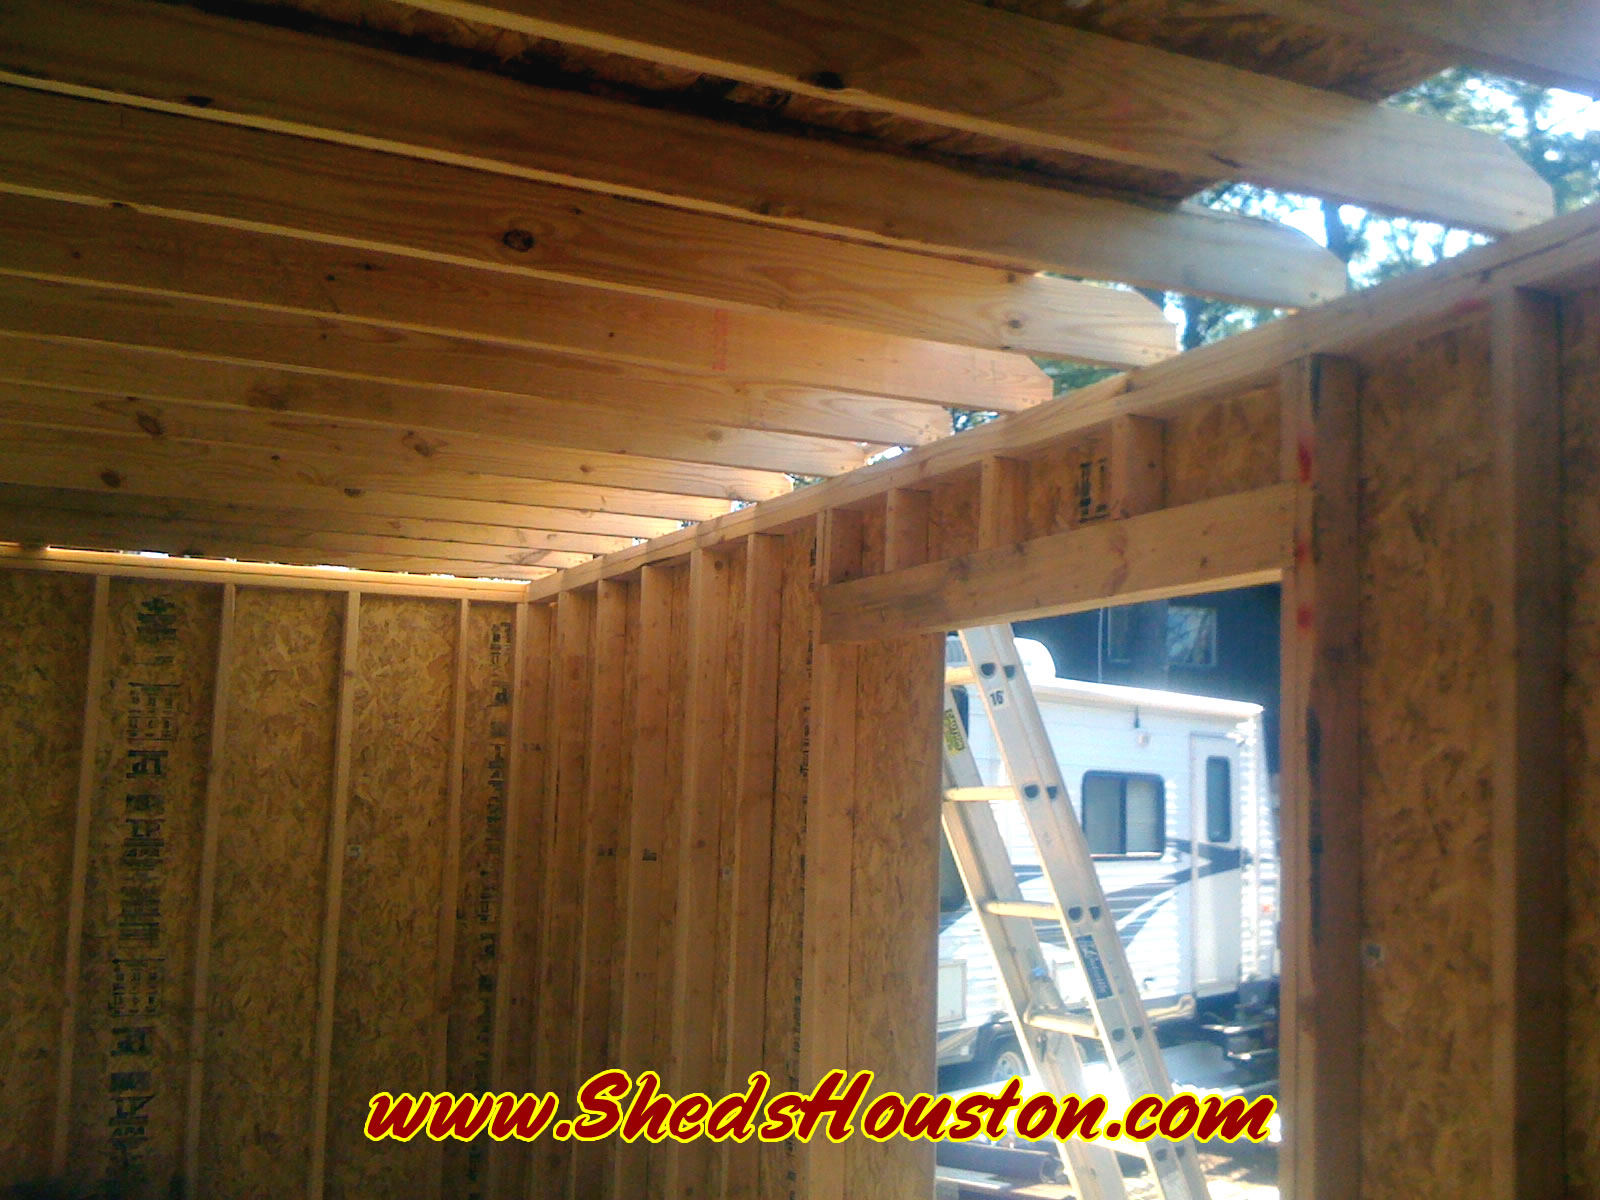 Shed door frame and attic framework